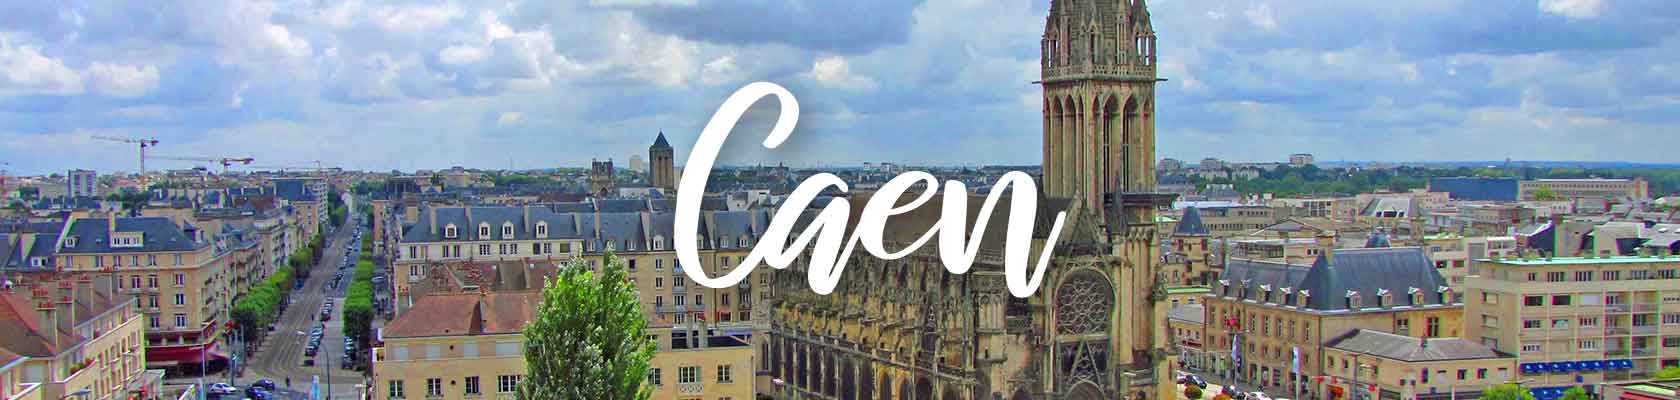 Caen_Zen_Organisation_team_building